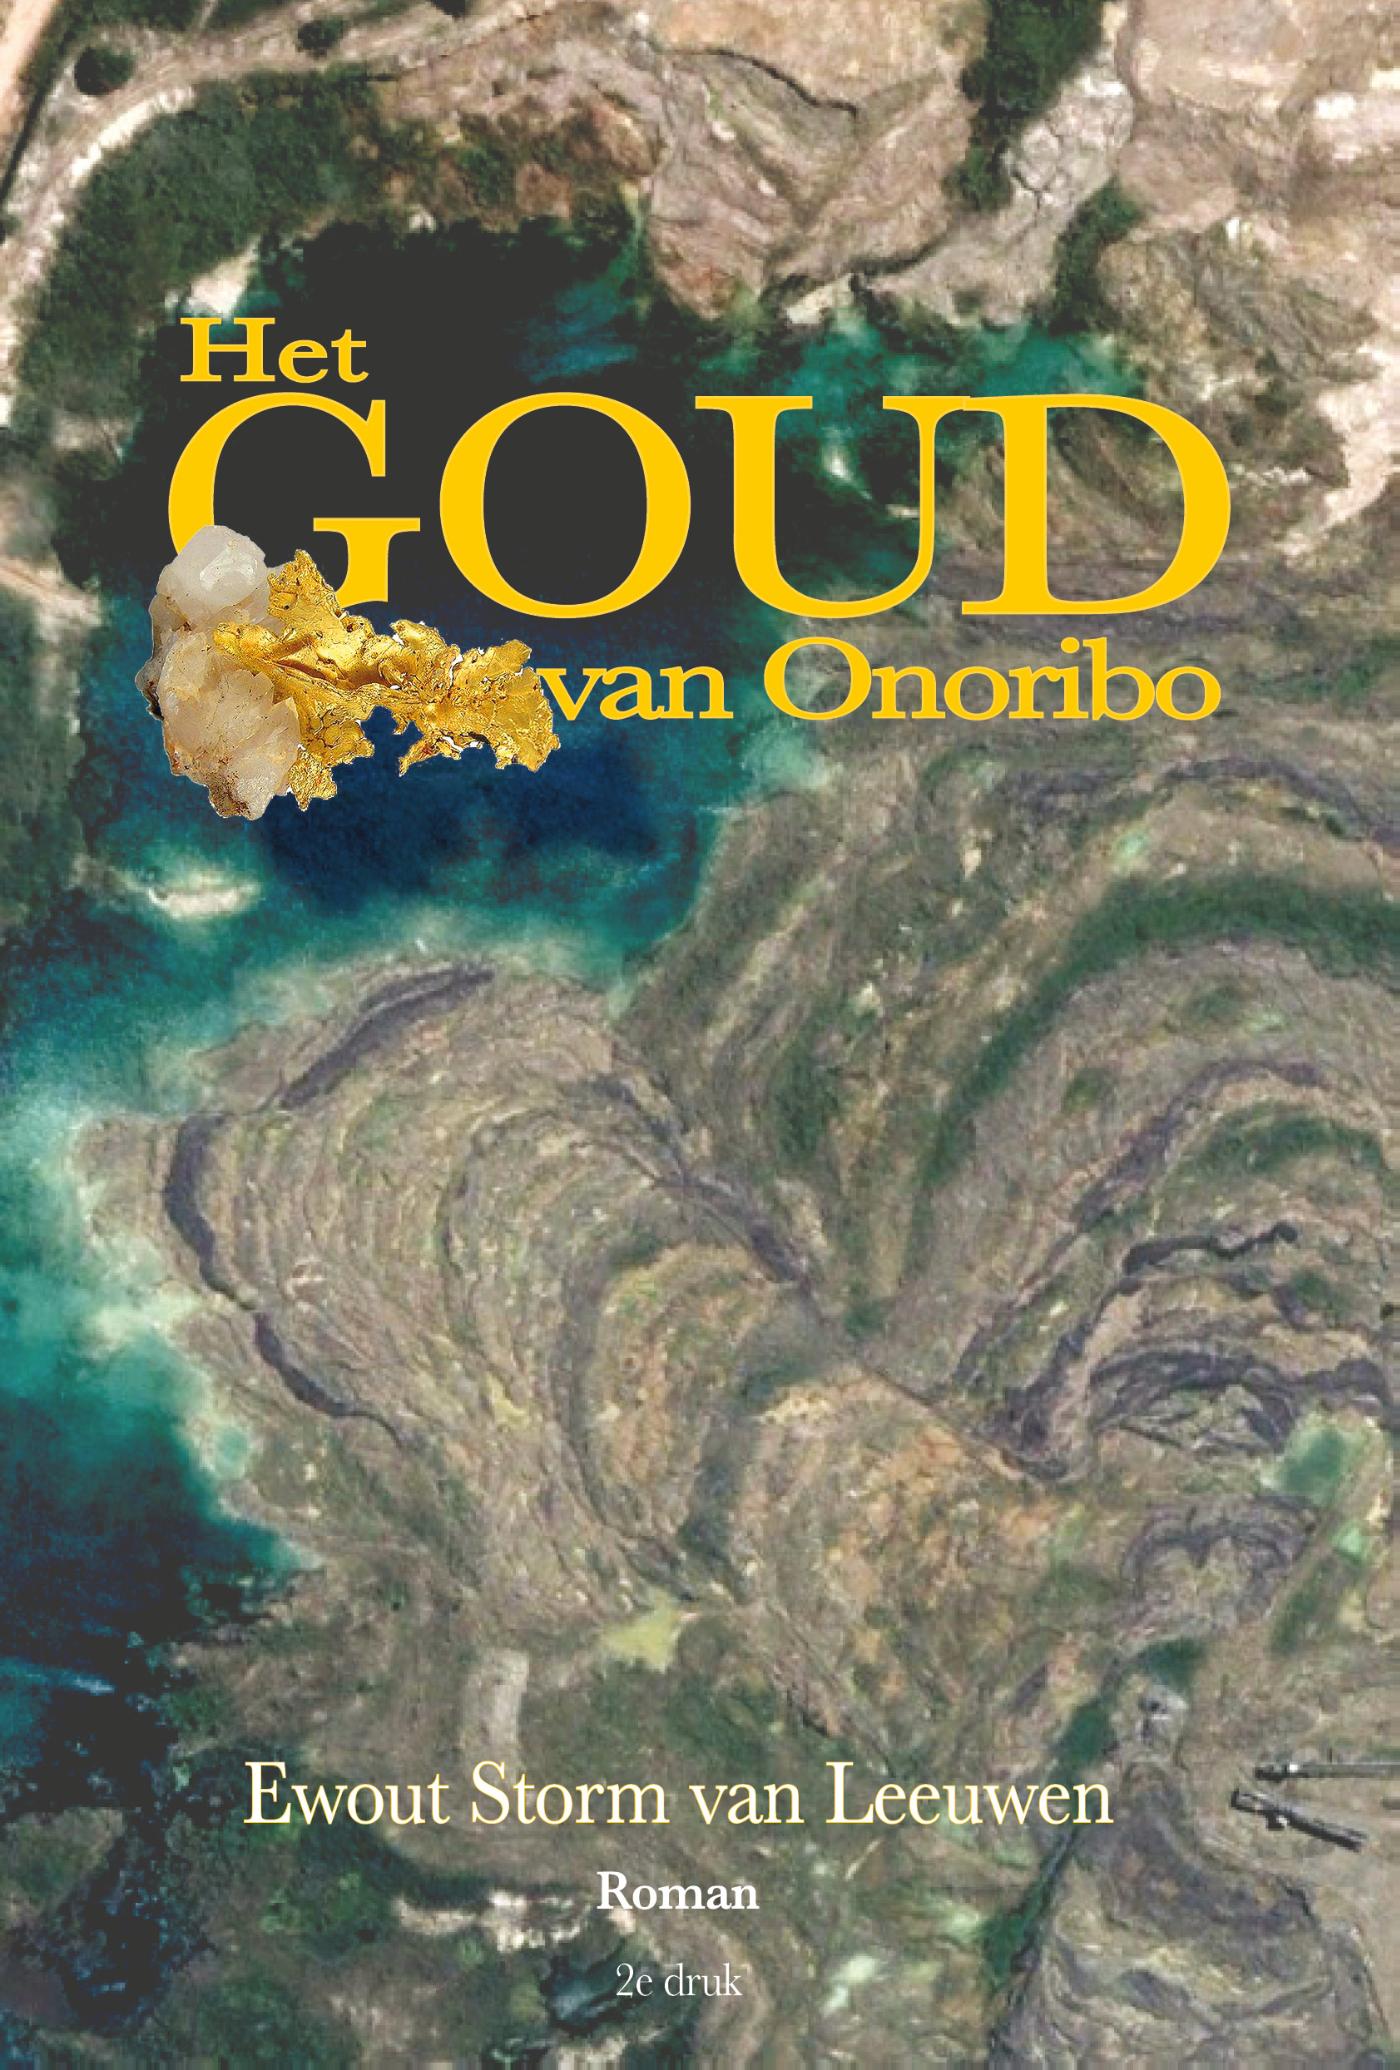 Het Goud van Onoribo (Ebook)